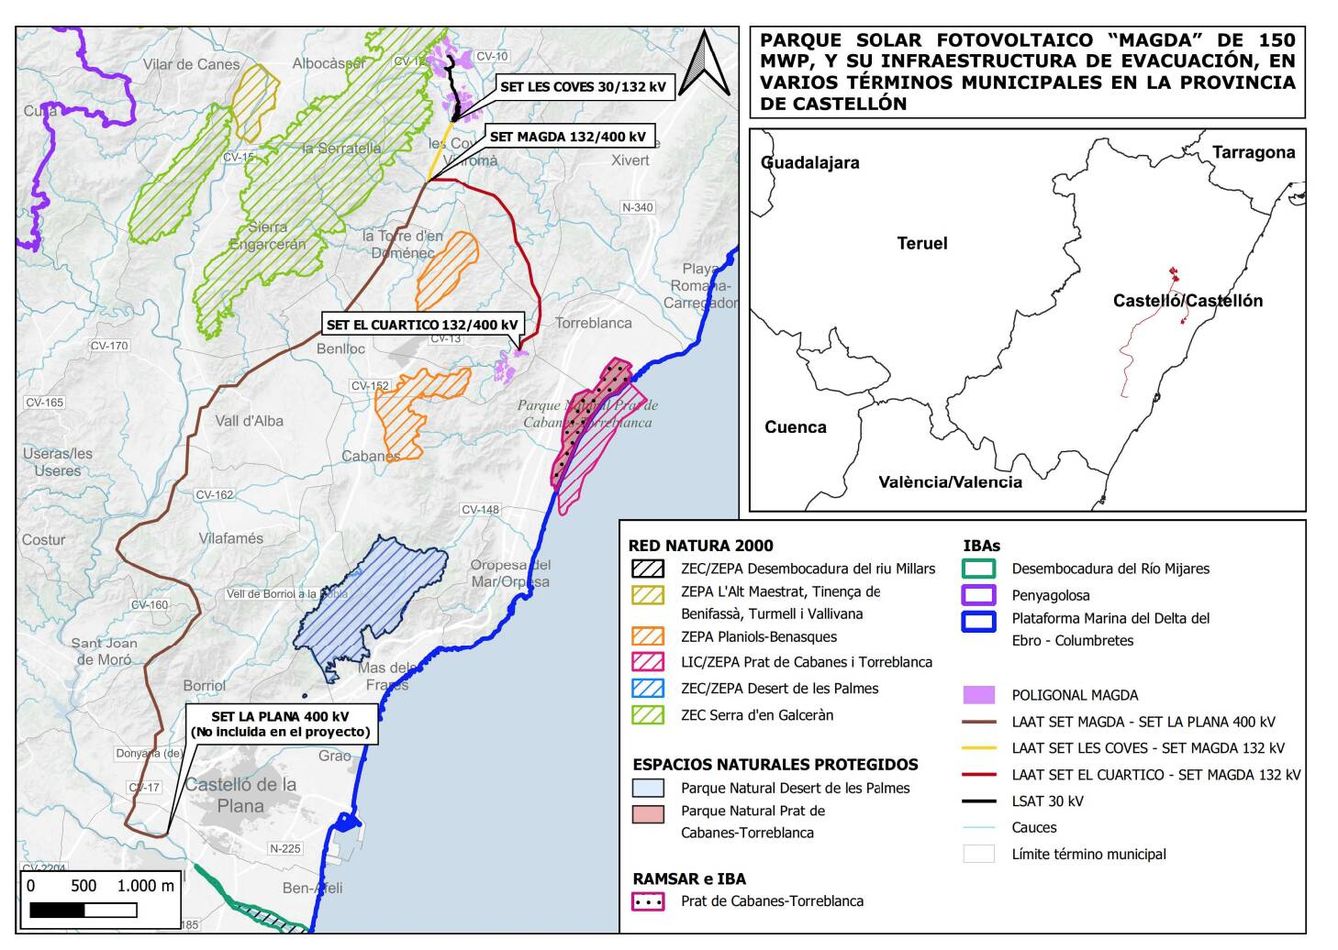 El proyecto (trama violeta) Magda sobre la provincia de Castelló, con las líneas de evacuación (marrón y roja).